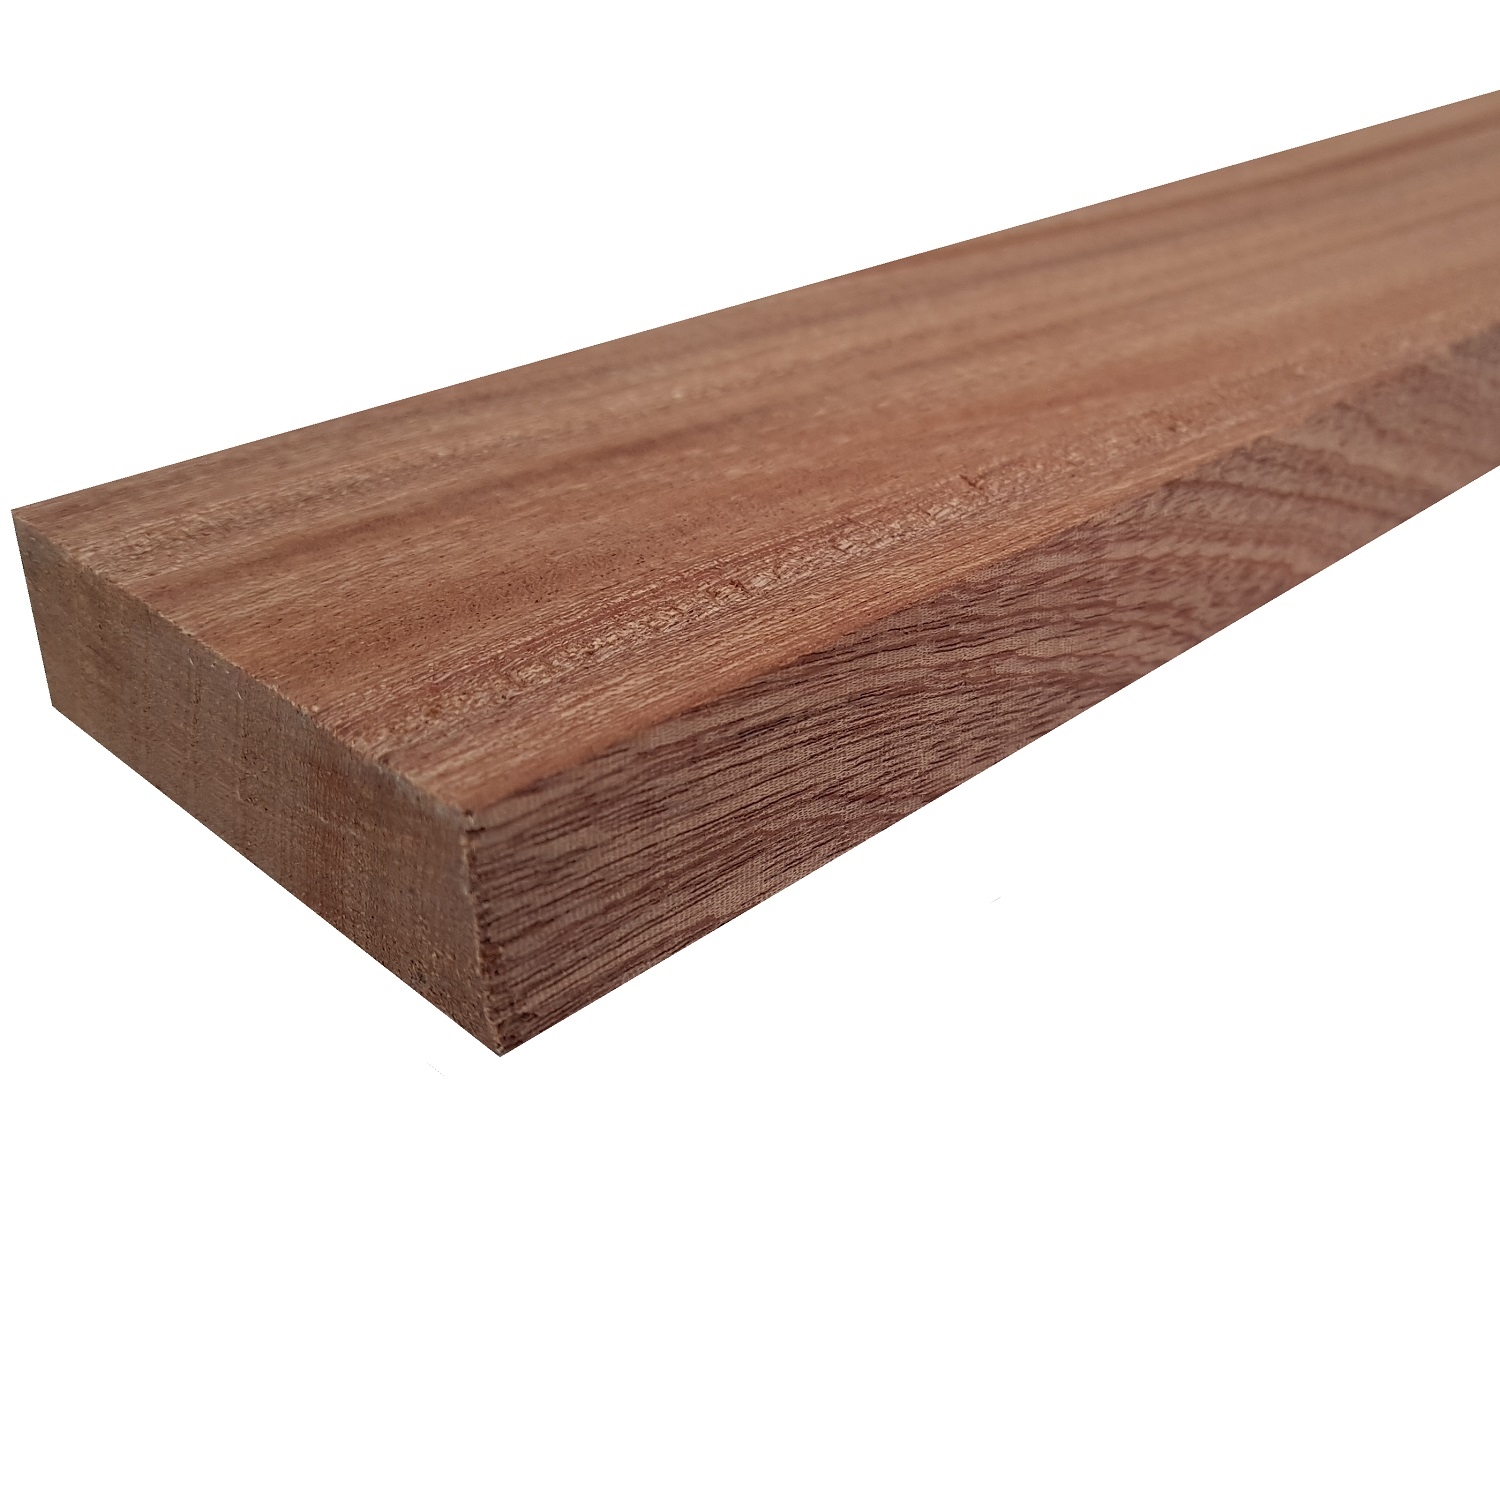 Tavola legno di Mogano Refilato Piallato mm 21 x 230 x 1550